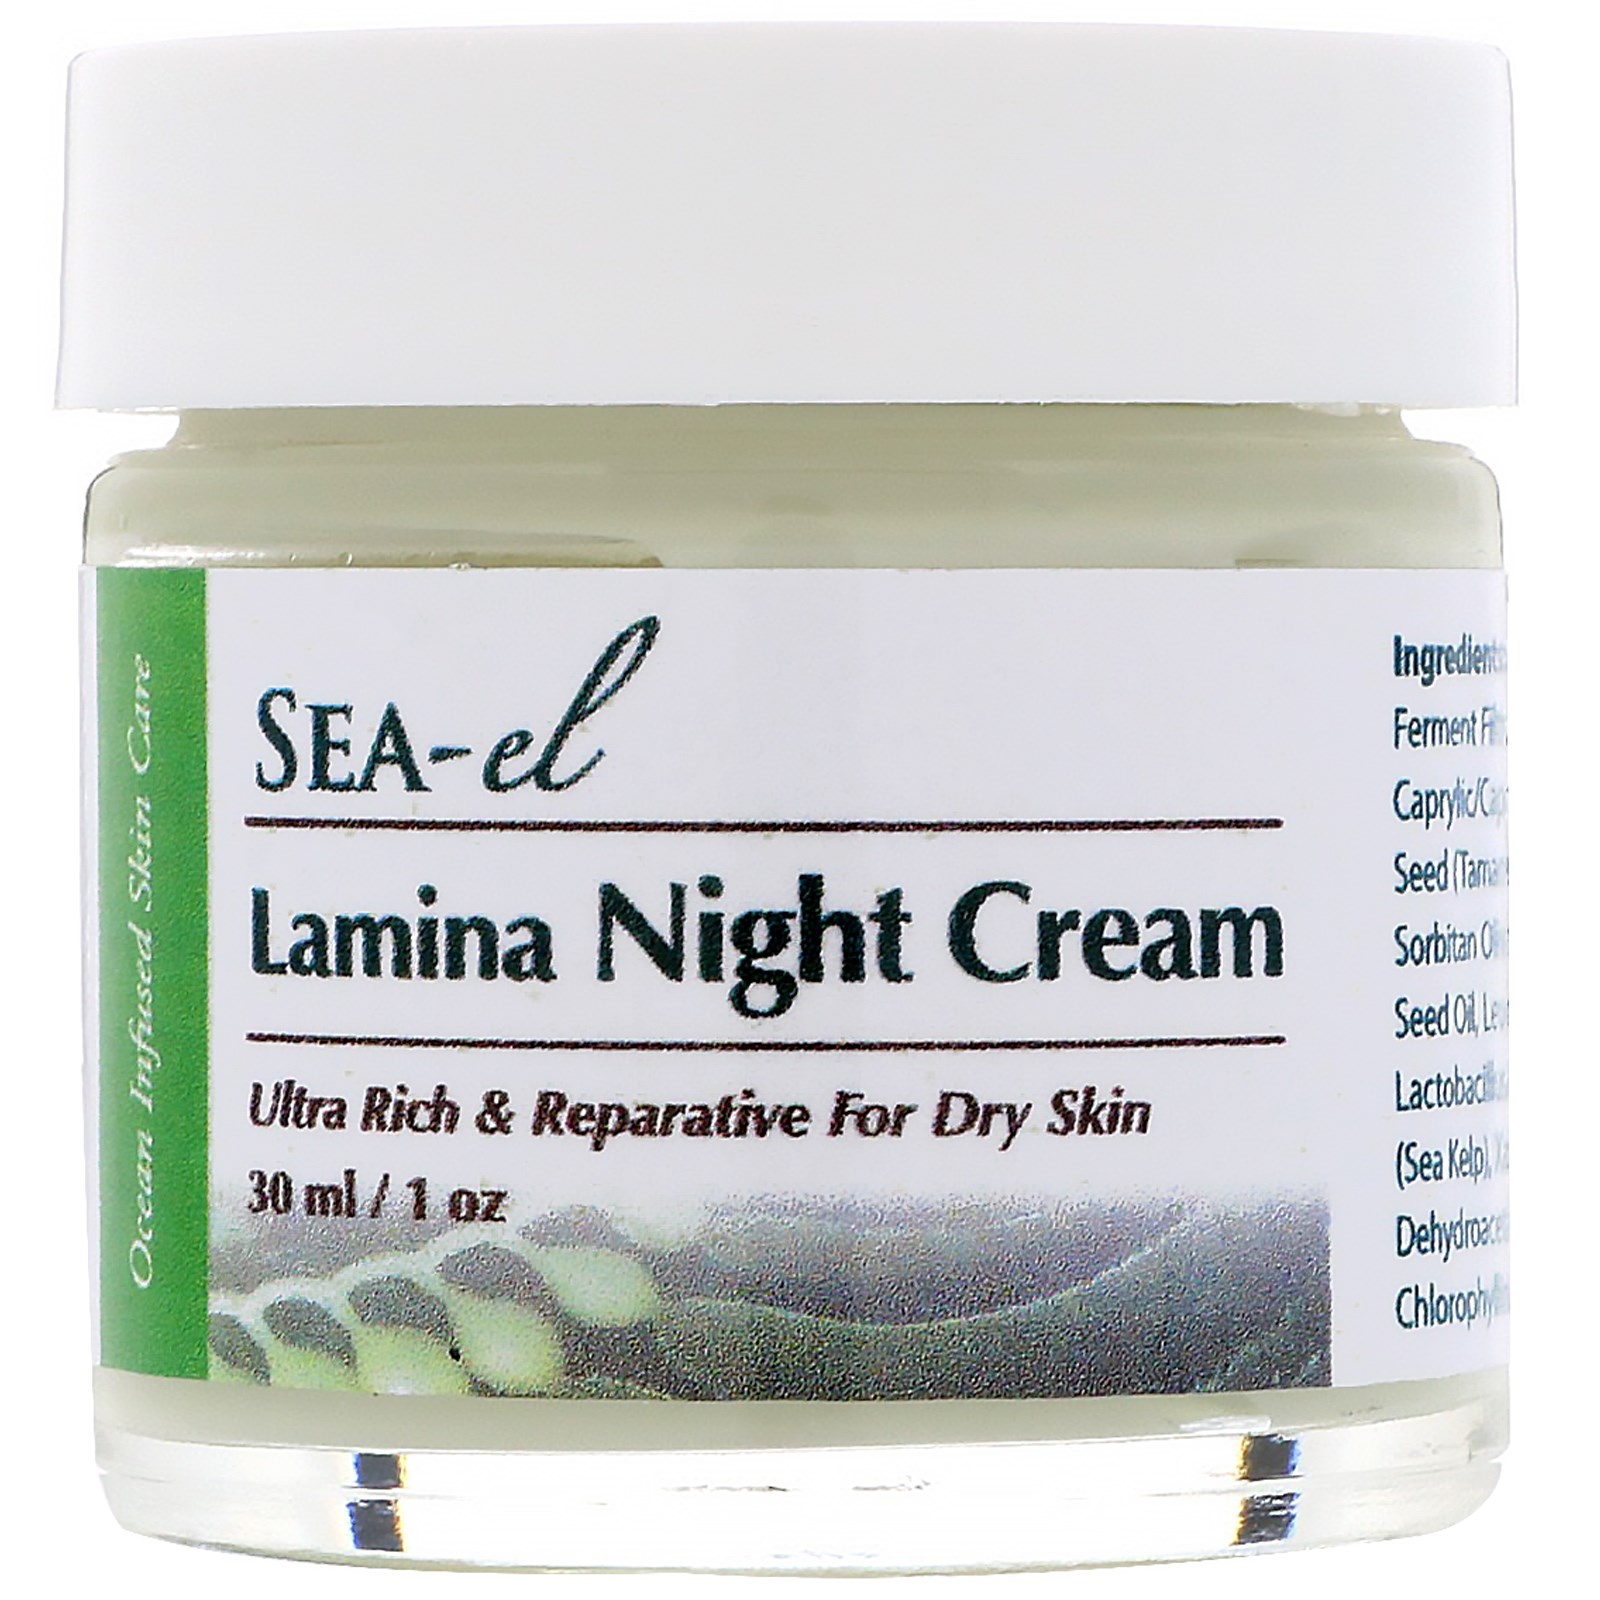 Sea-el Lamina Night Cream